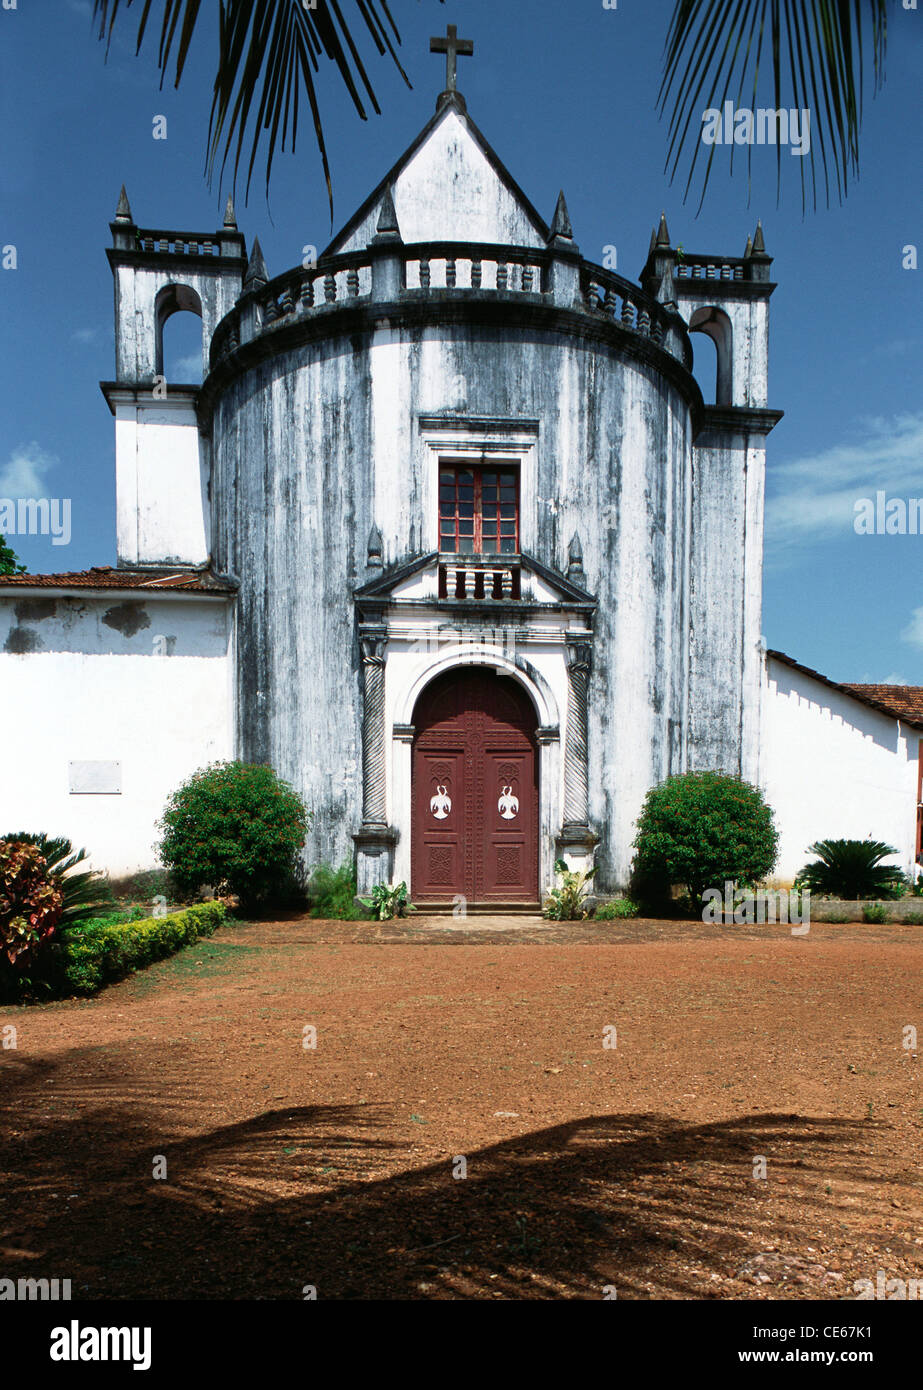 Royal Chapel Of ST. Antony ; Old Goa ; India Stock Photo